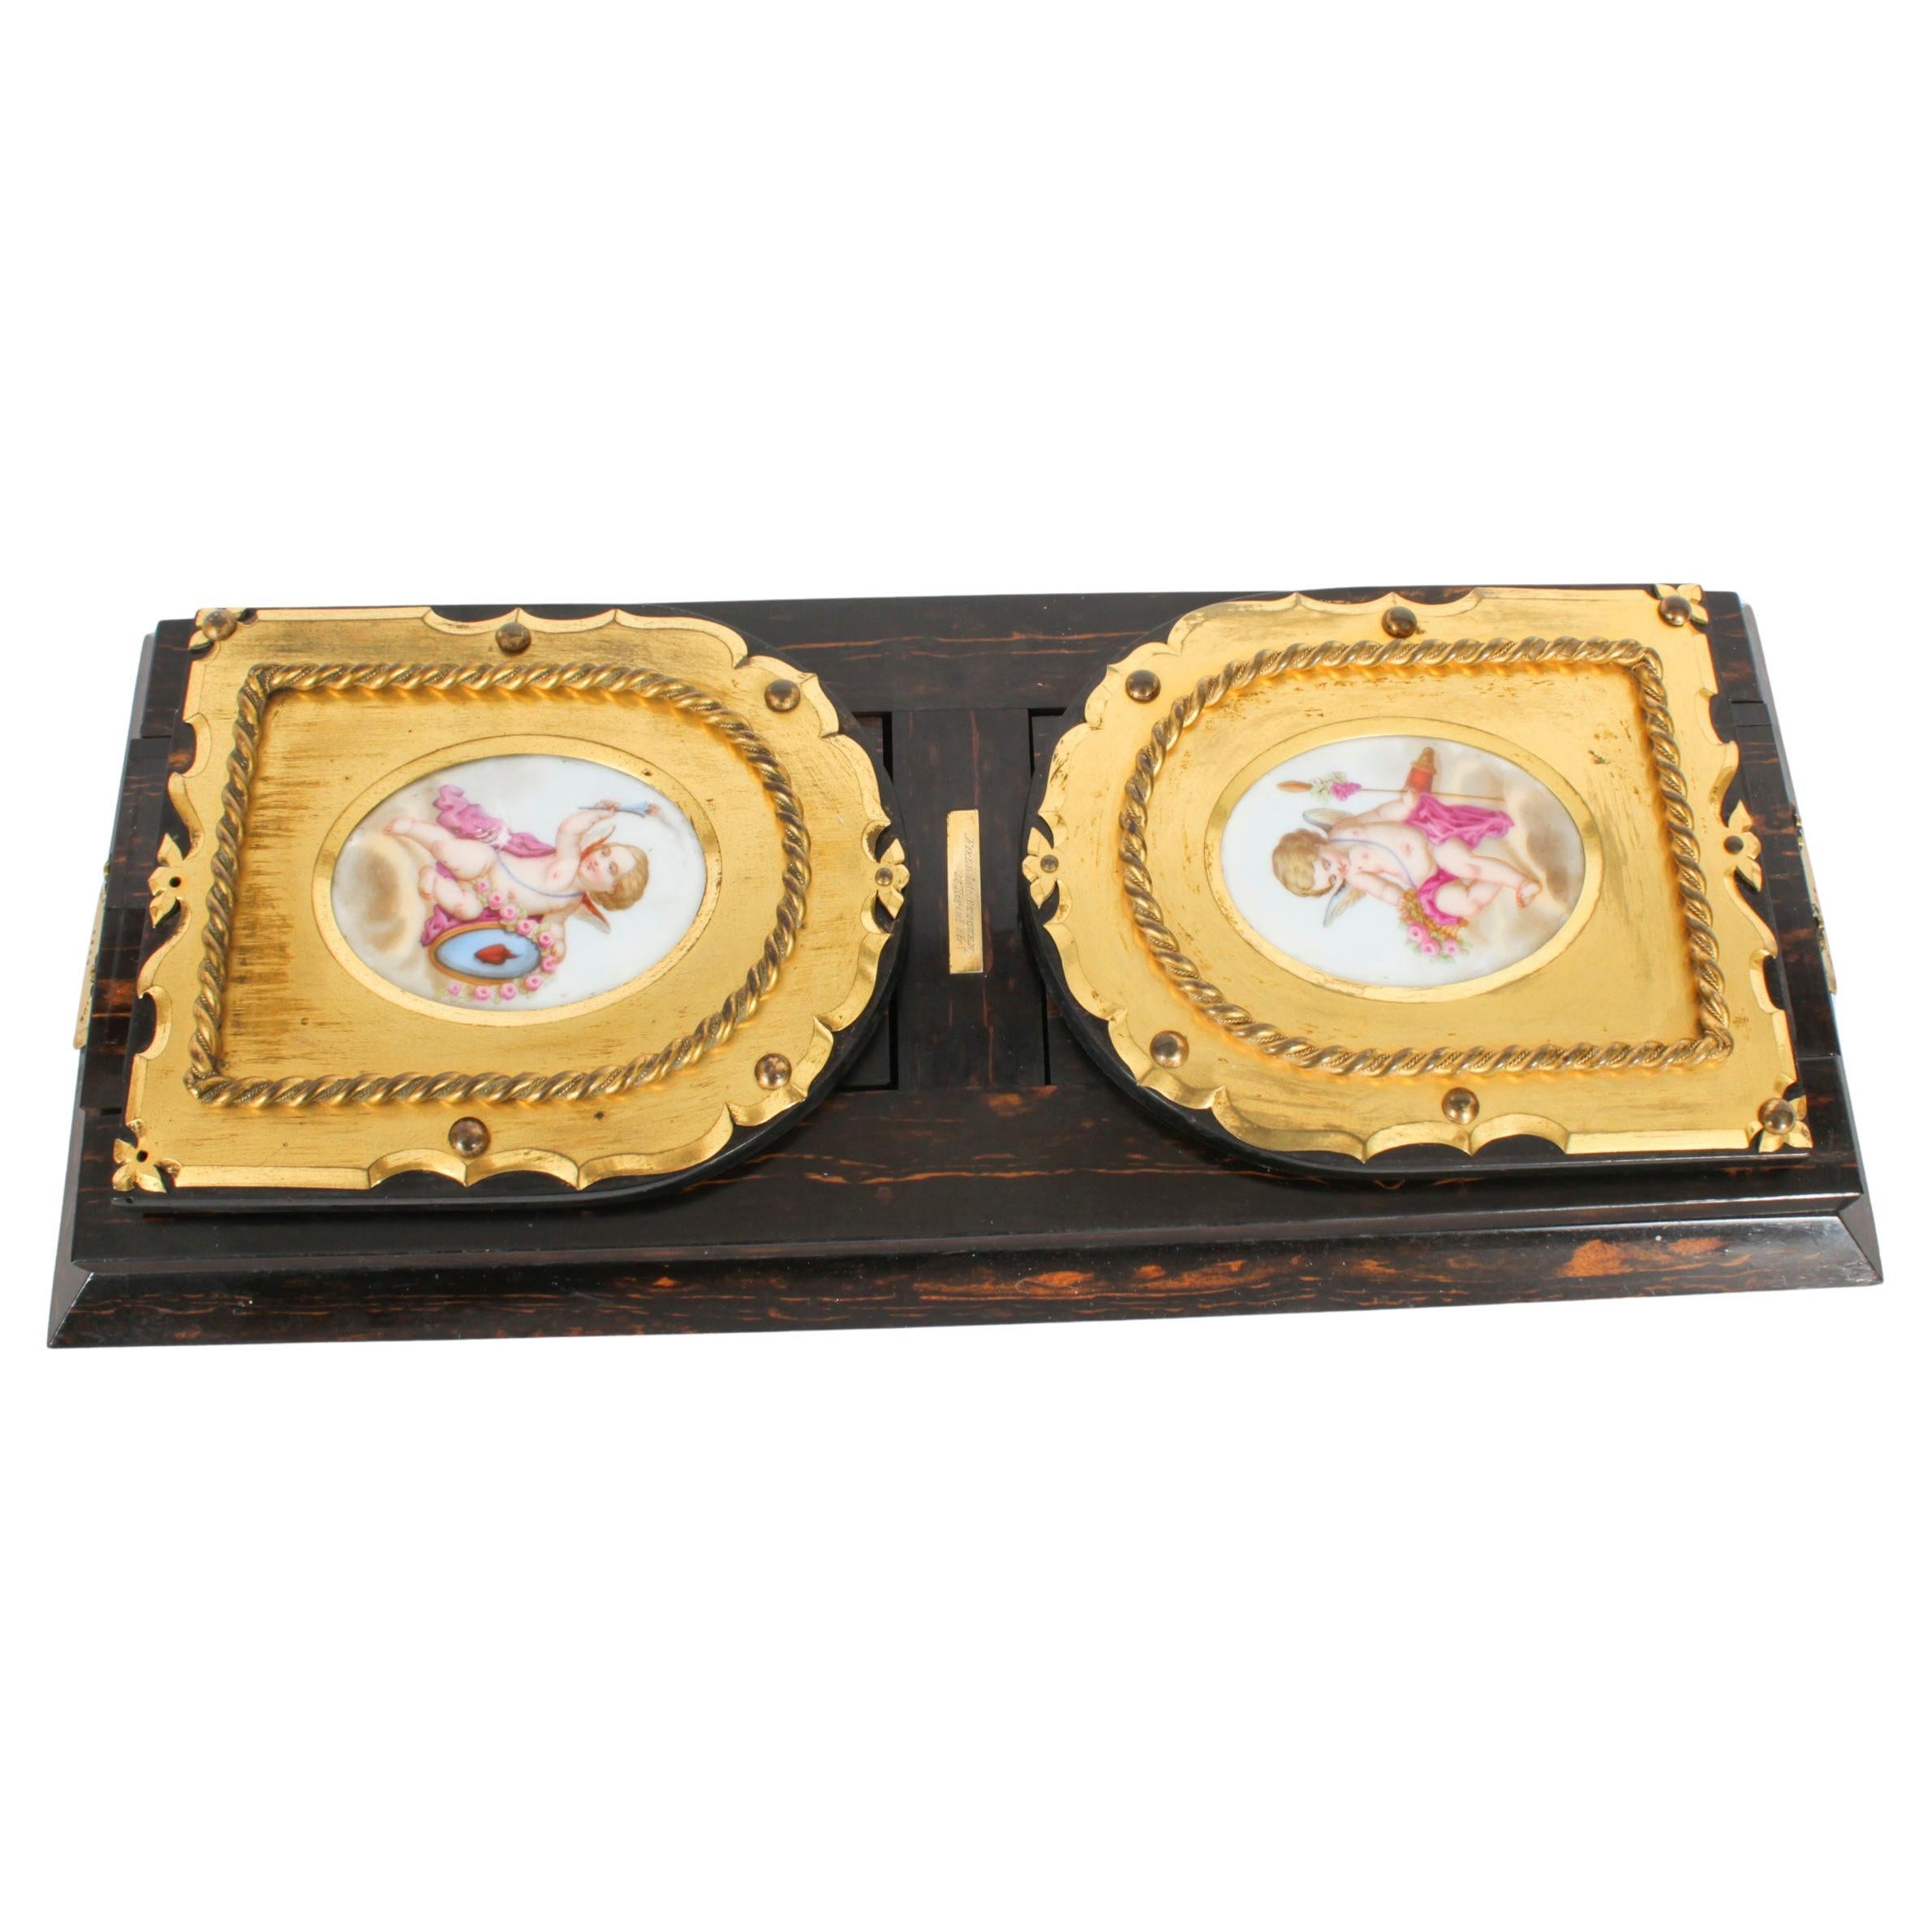 Antike viktorianische Betjemann's Porzellan-Coromandel-Buchschiene aus dem 19. Jahrhundert